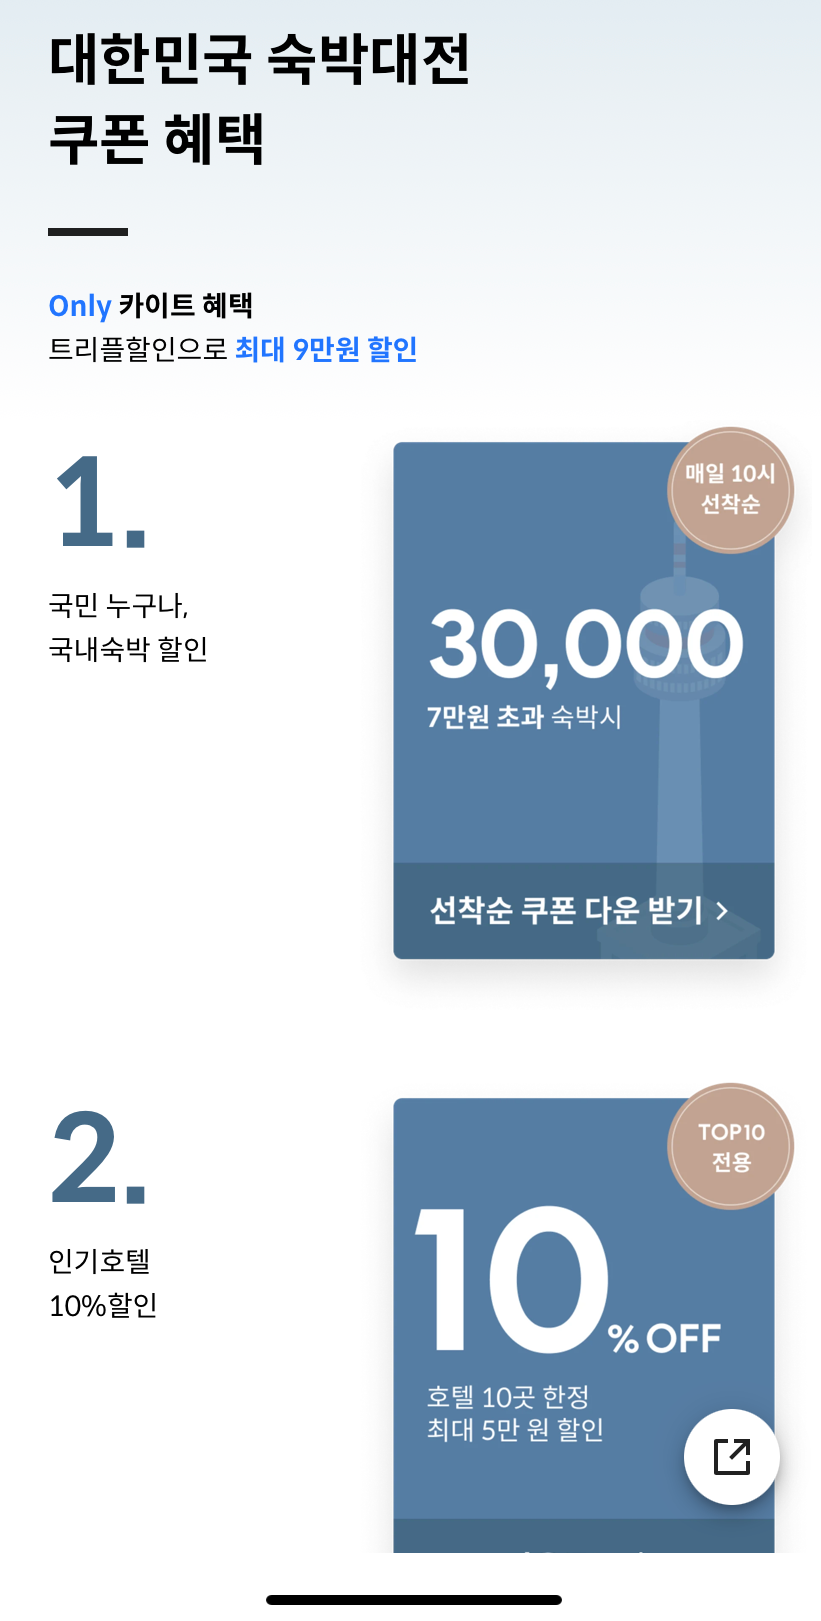 그랜드 하얏트 서울 호텔 예약, 남산뷰 후기